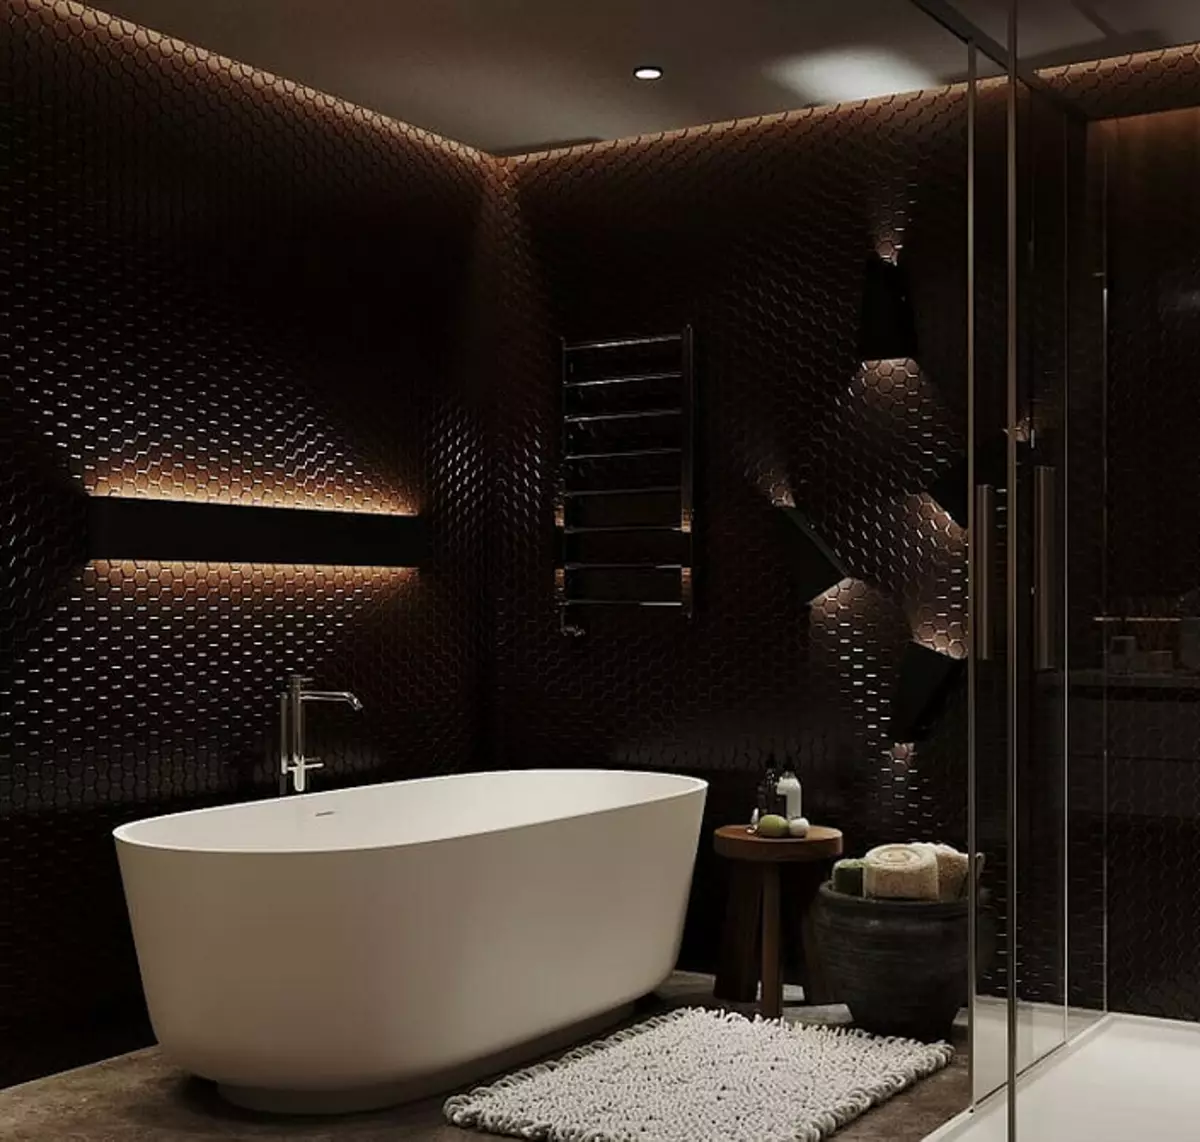 Design de banheiro com chuveiro e banho: Idéias interiores em 75 fotos - IVD.RU 4108_74